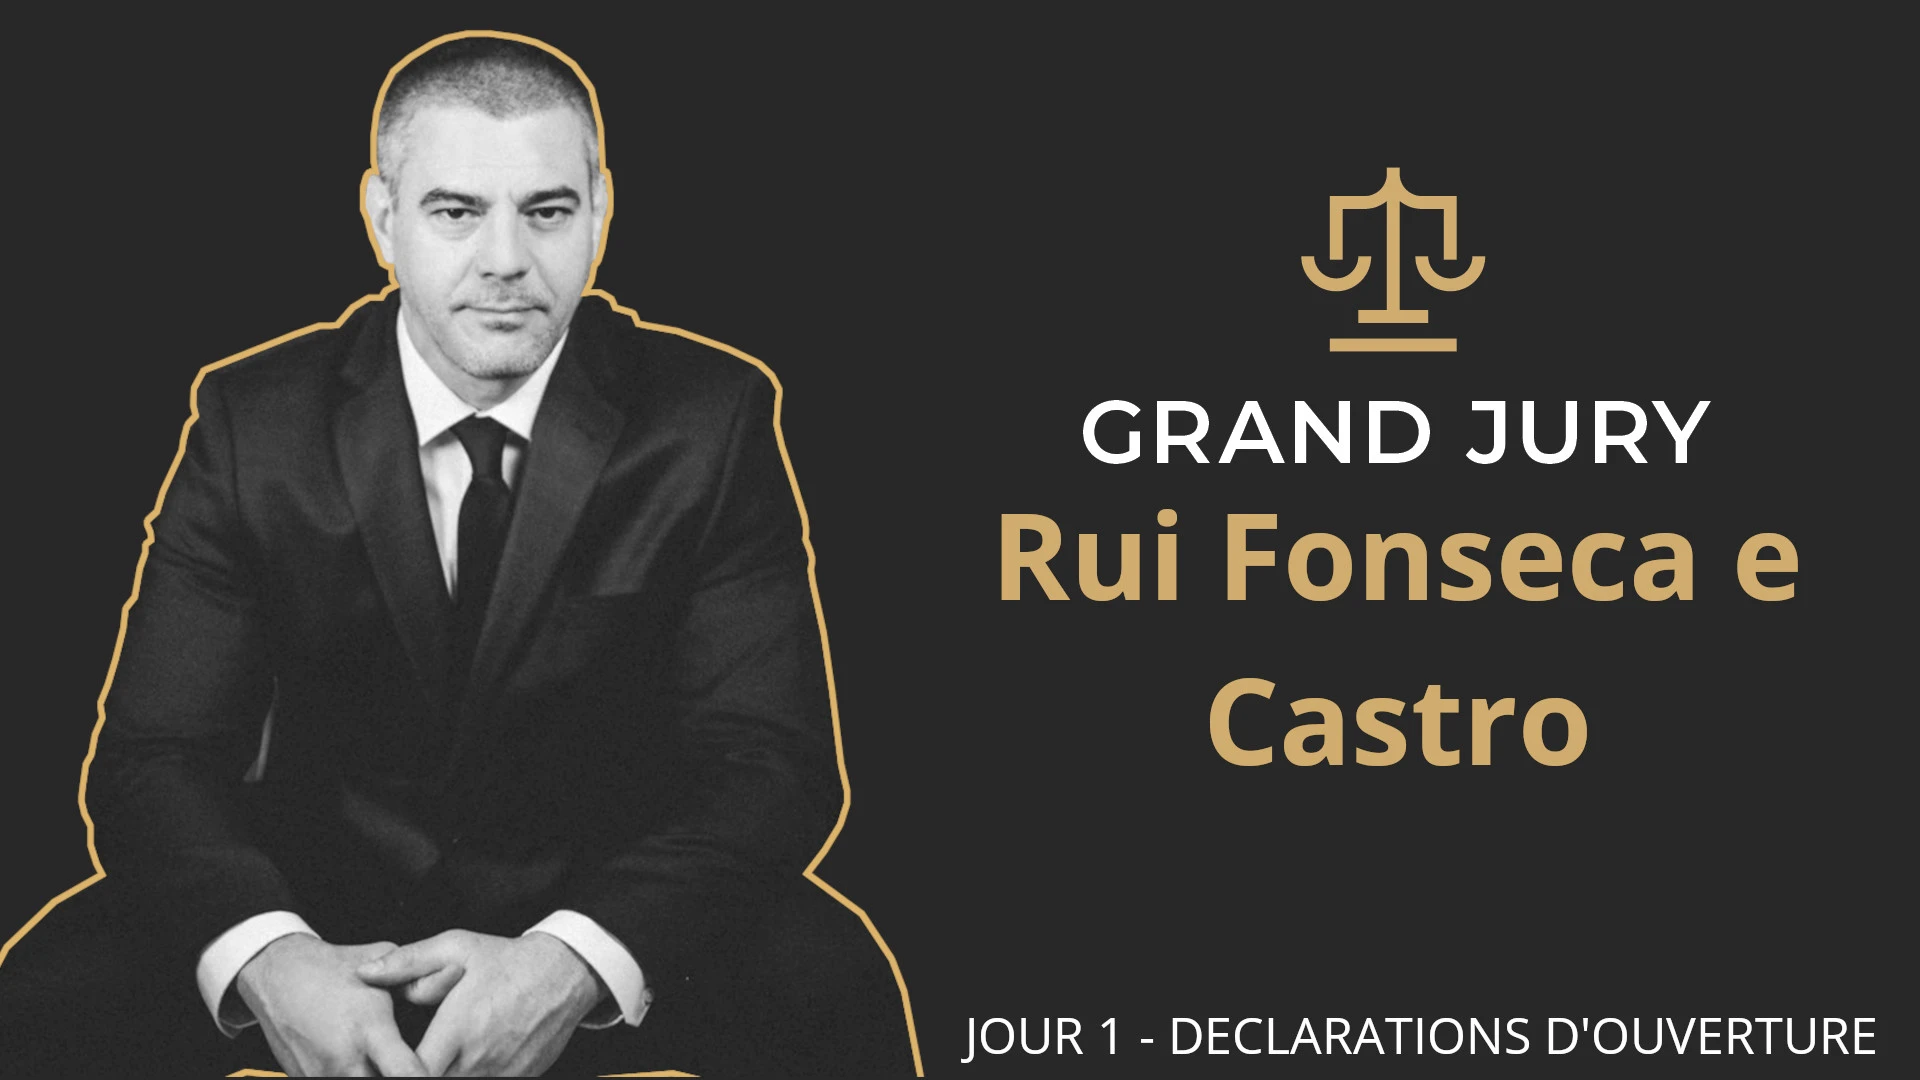 Rui Fonseca e Castro / Jour 1 – Grand Jury